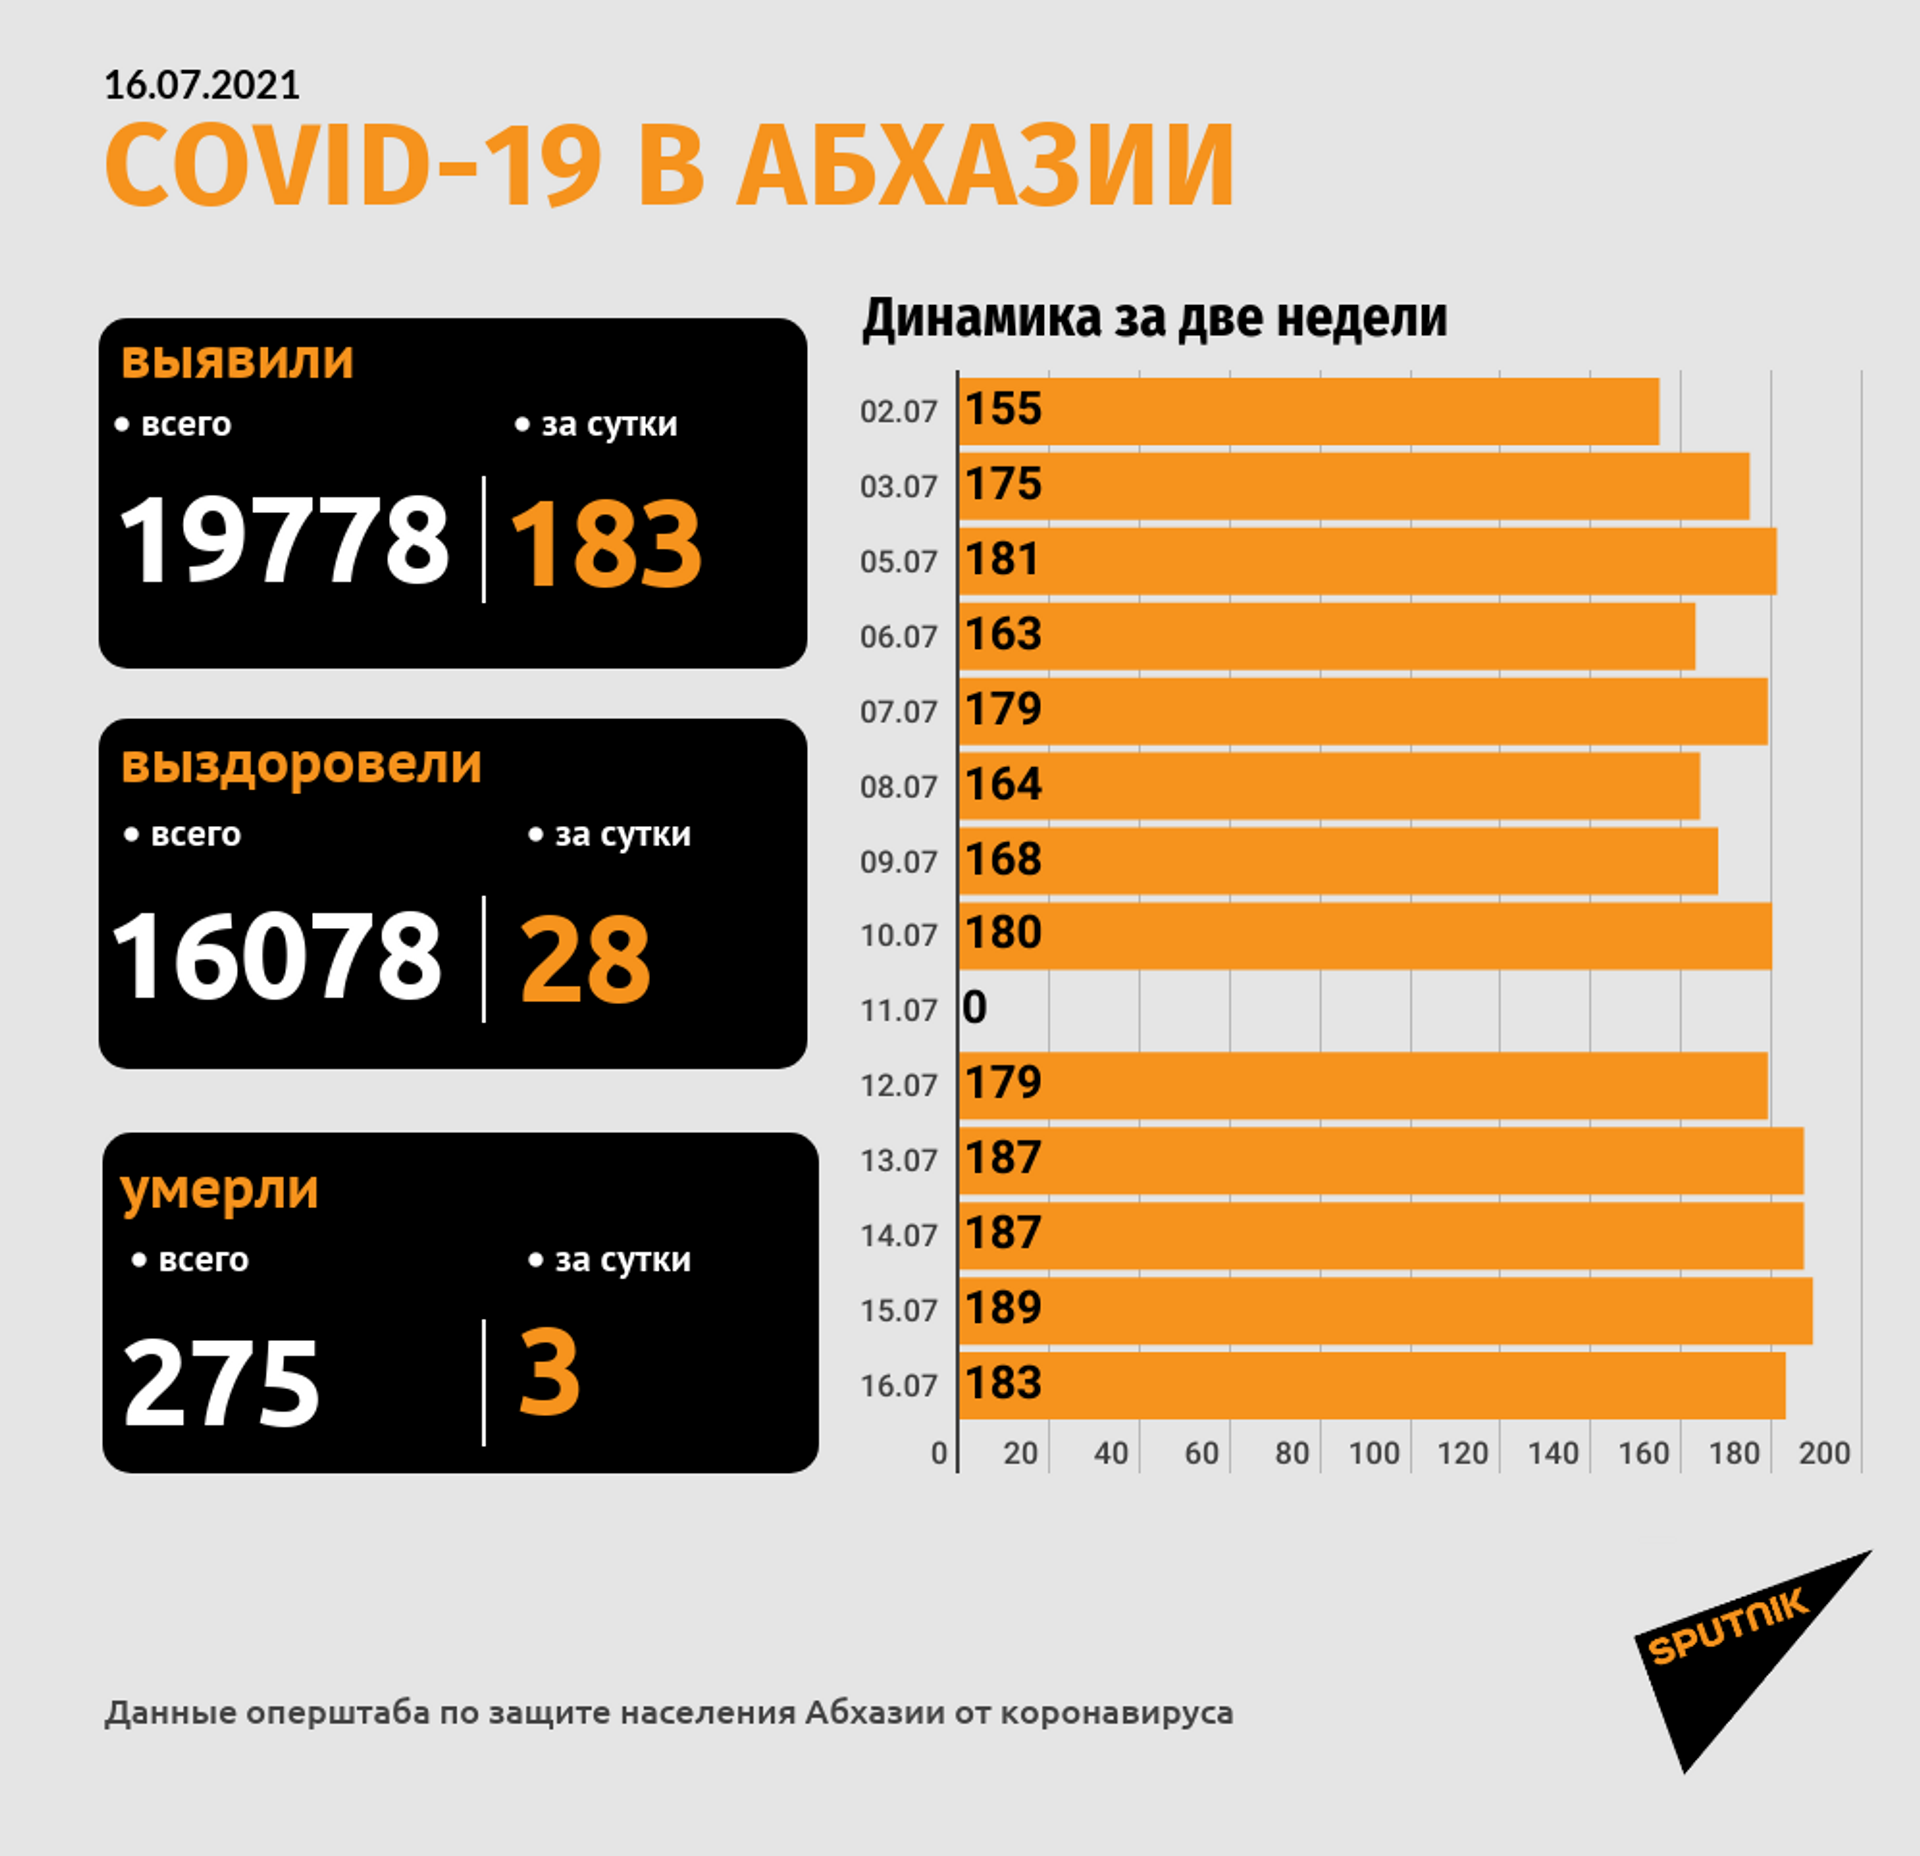 Число смертельных случаев среди пациентов с COVID-19 в Абхазии достигло 275 - Sputnik Абхазия, 1920, 16.07.2021